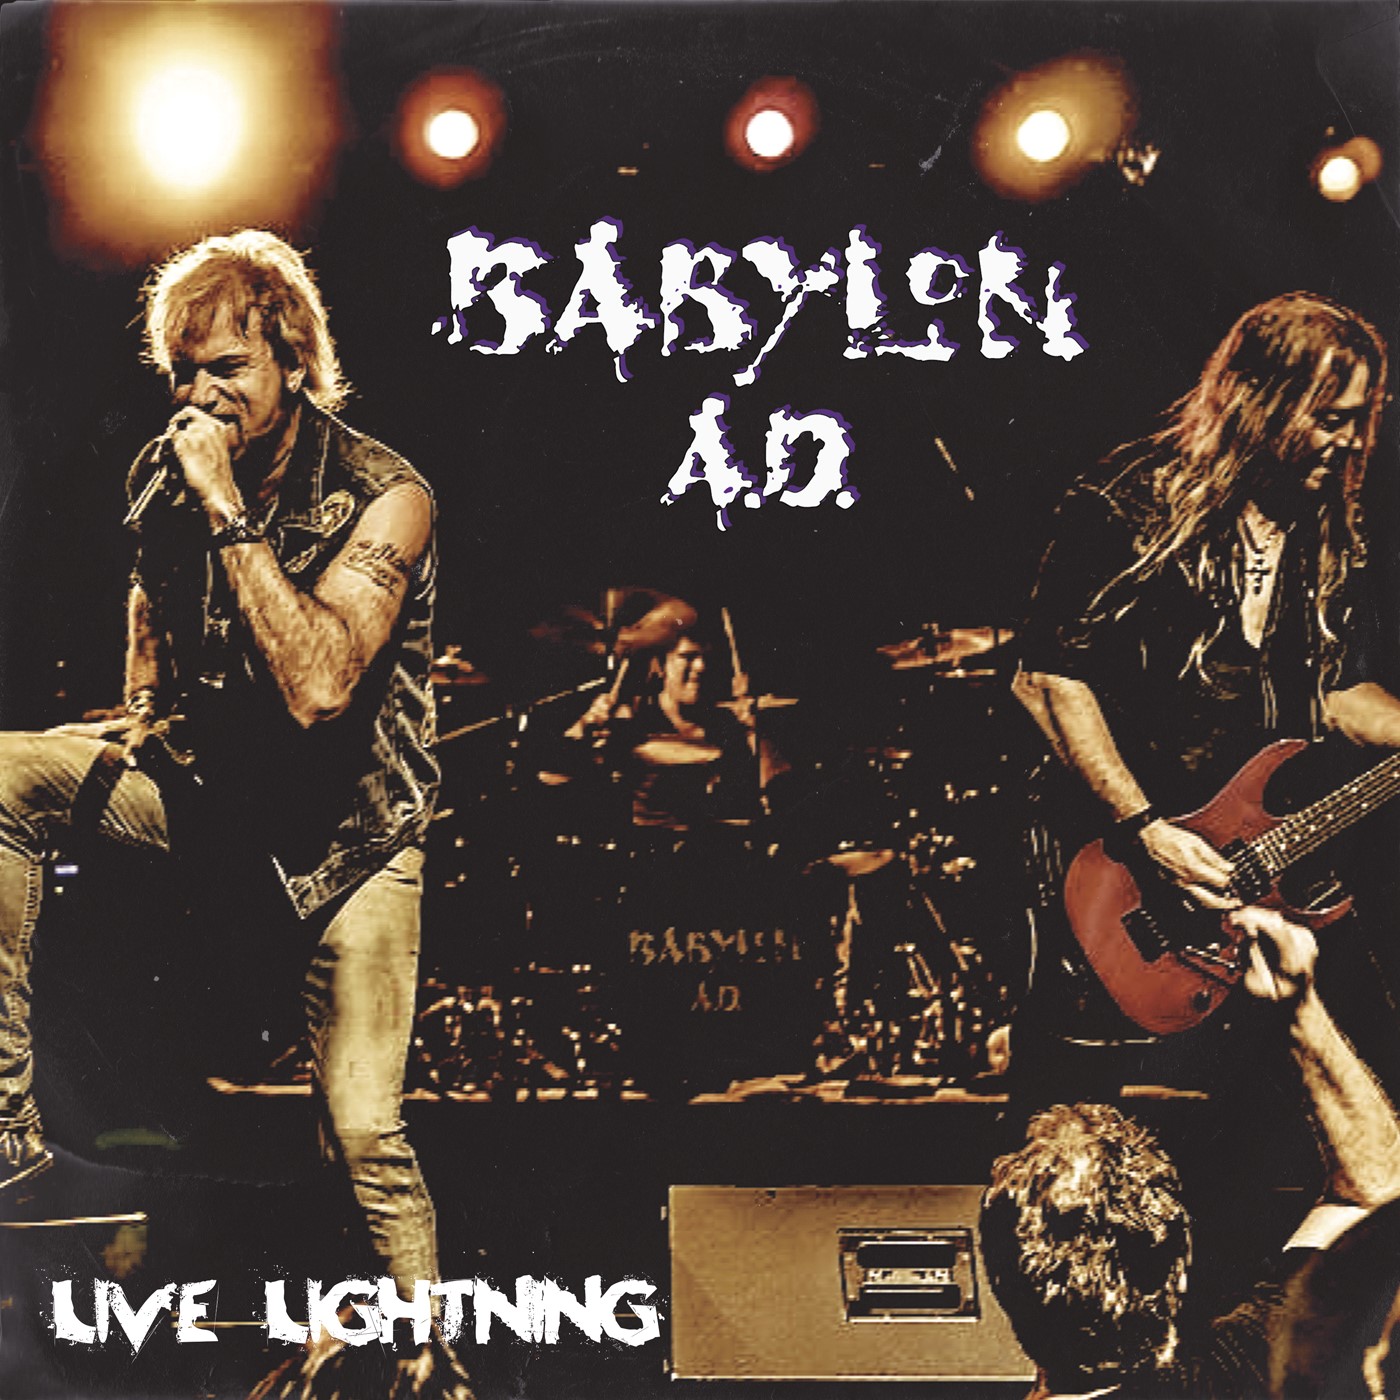 BABYLON A.D. is Back with "Live Lightning" a Career Spanning 14 Track Live Album